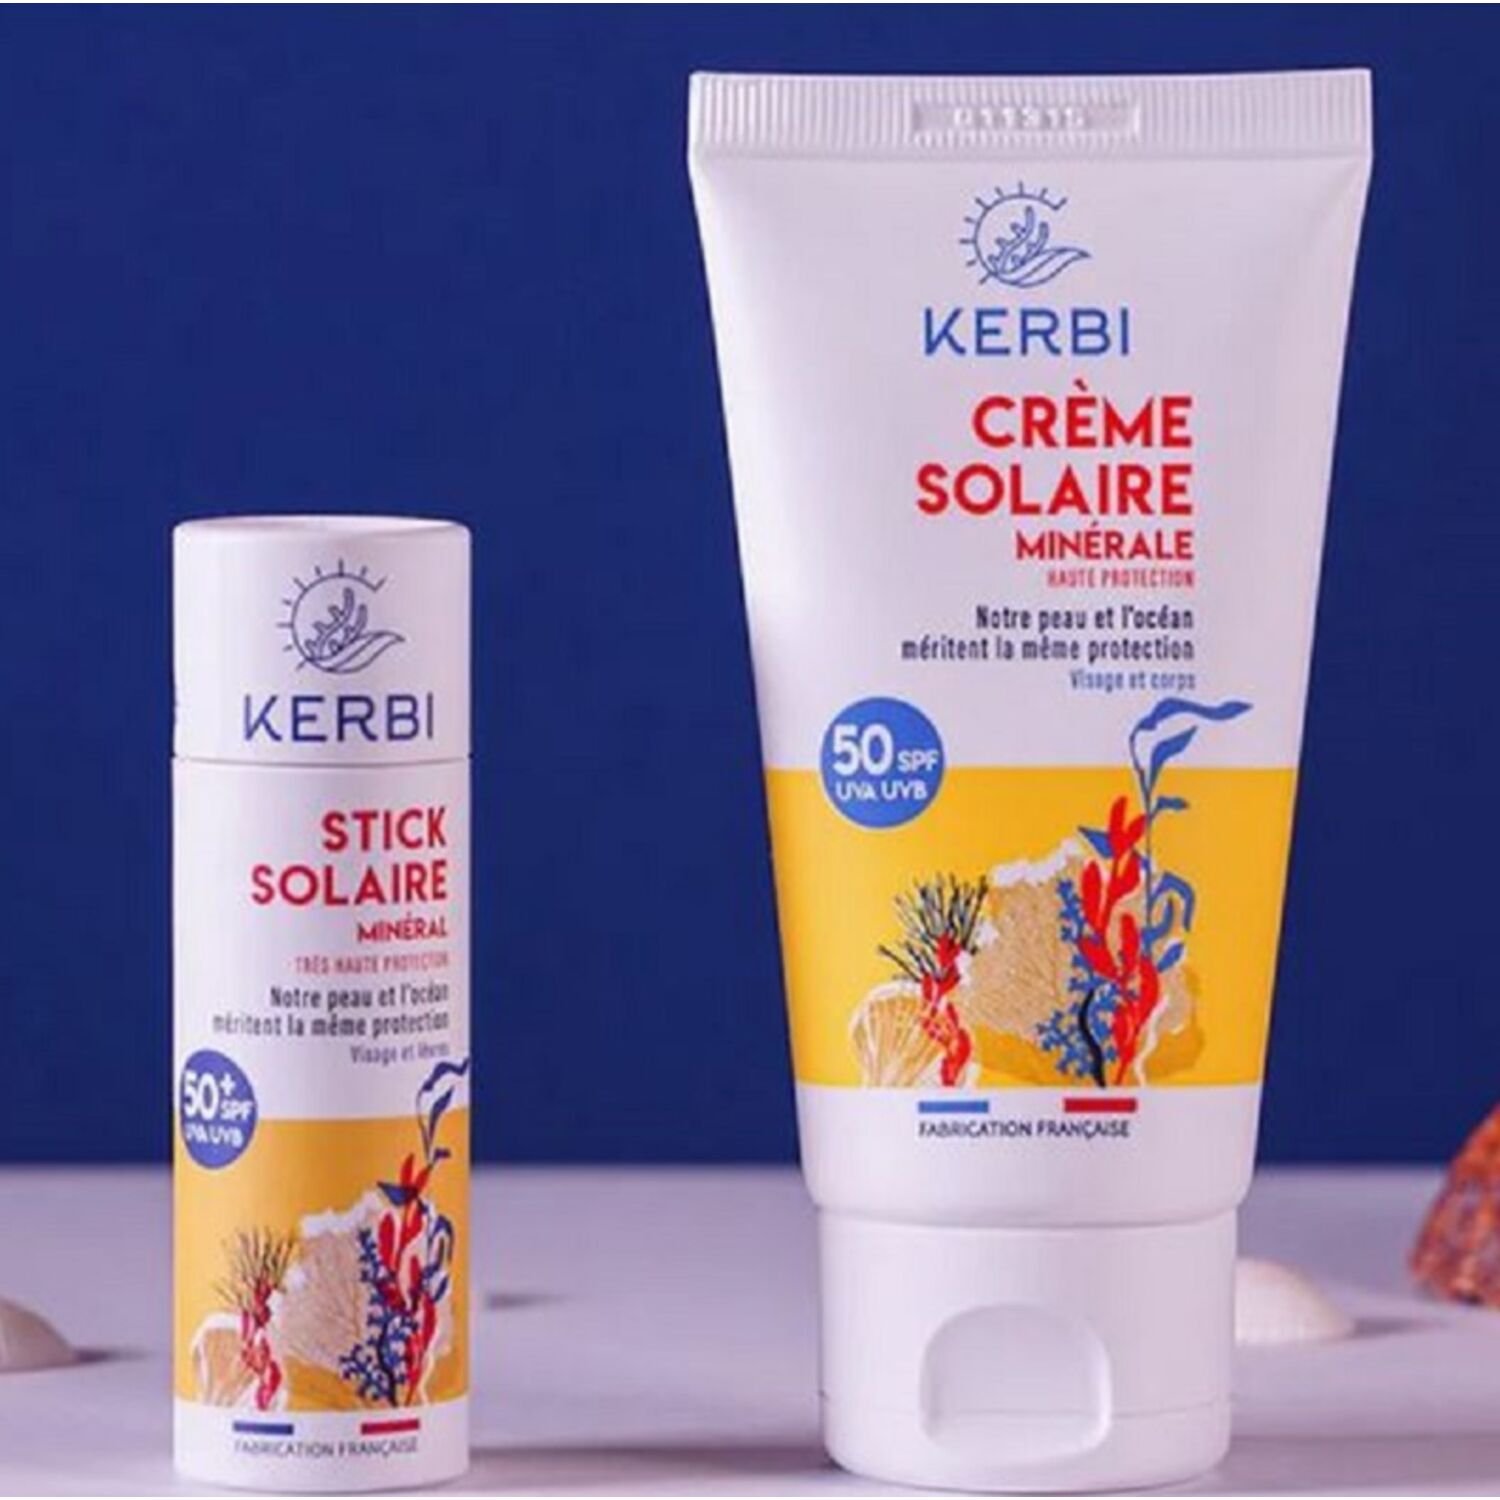 Kerbi : la crème solaire vannetaise éco-responsable